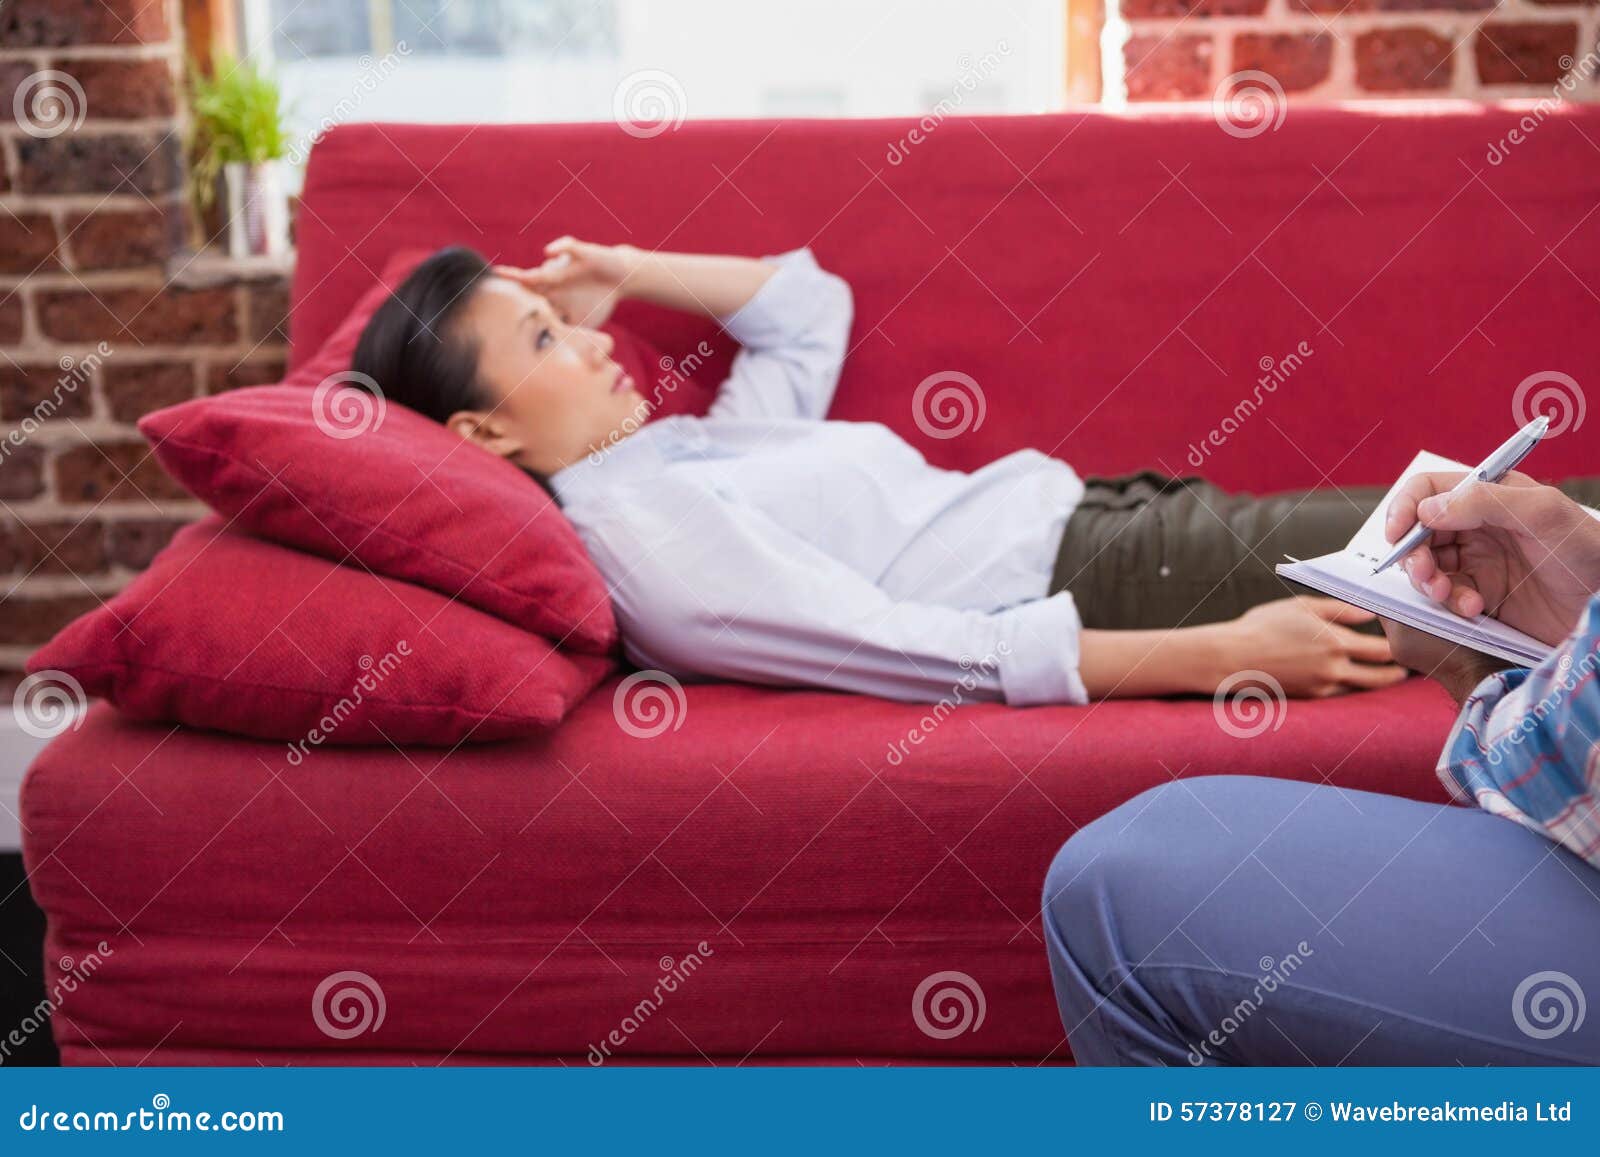 Лежали или лижали. Подросток лежит на диване. Фотосессия депрессия. Пресс лежа на диване. Софа спать.